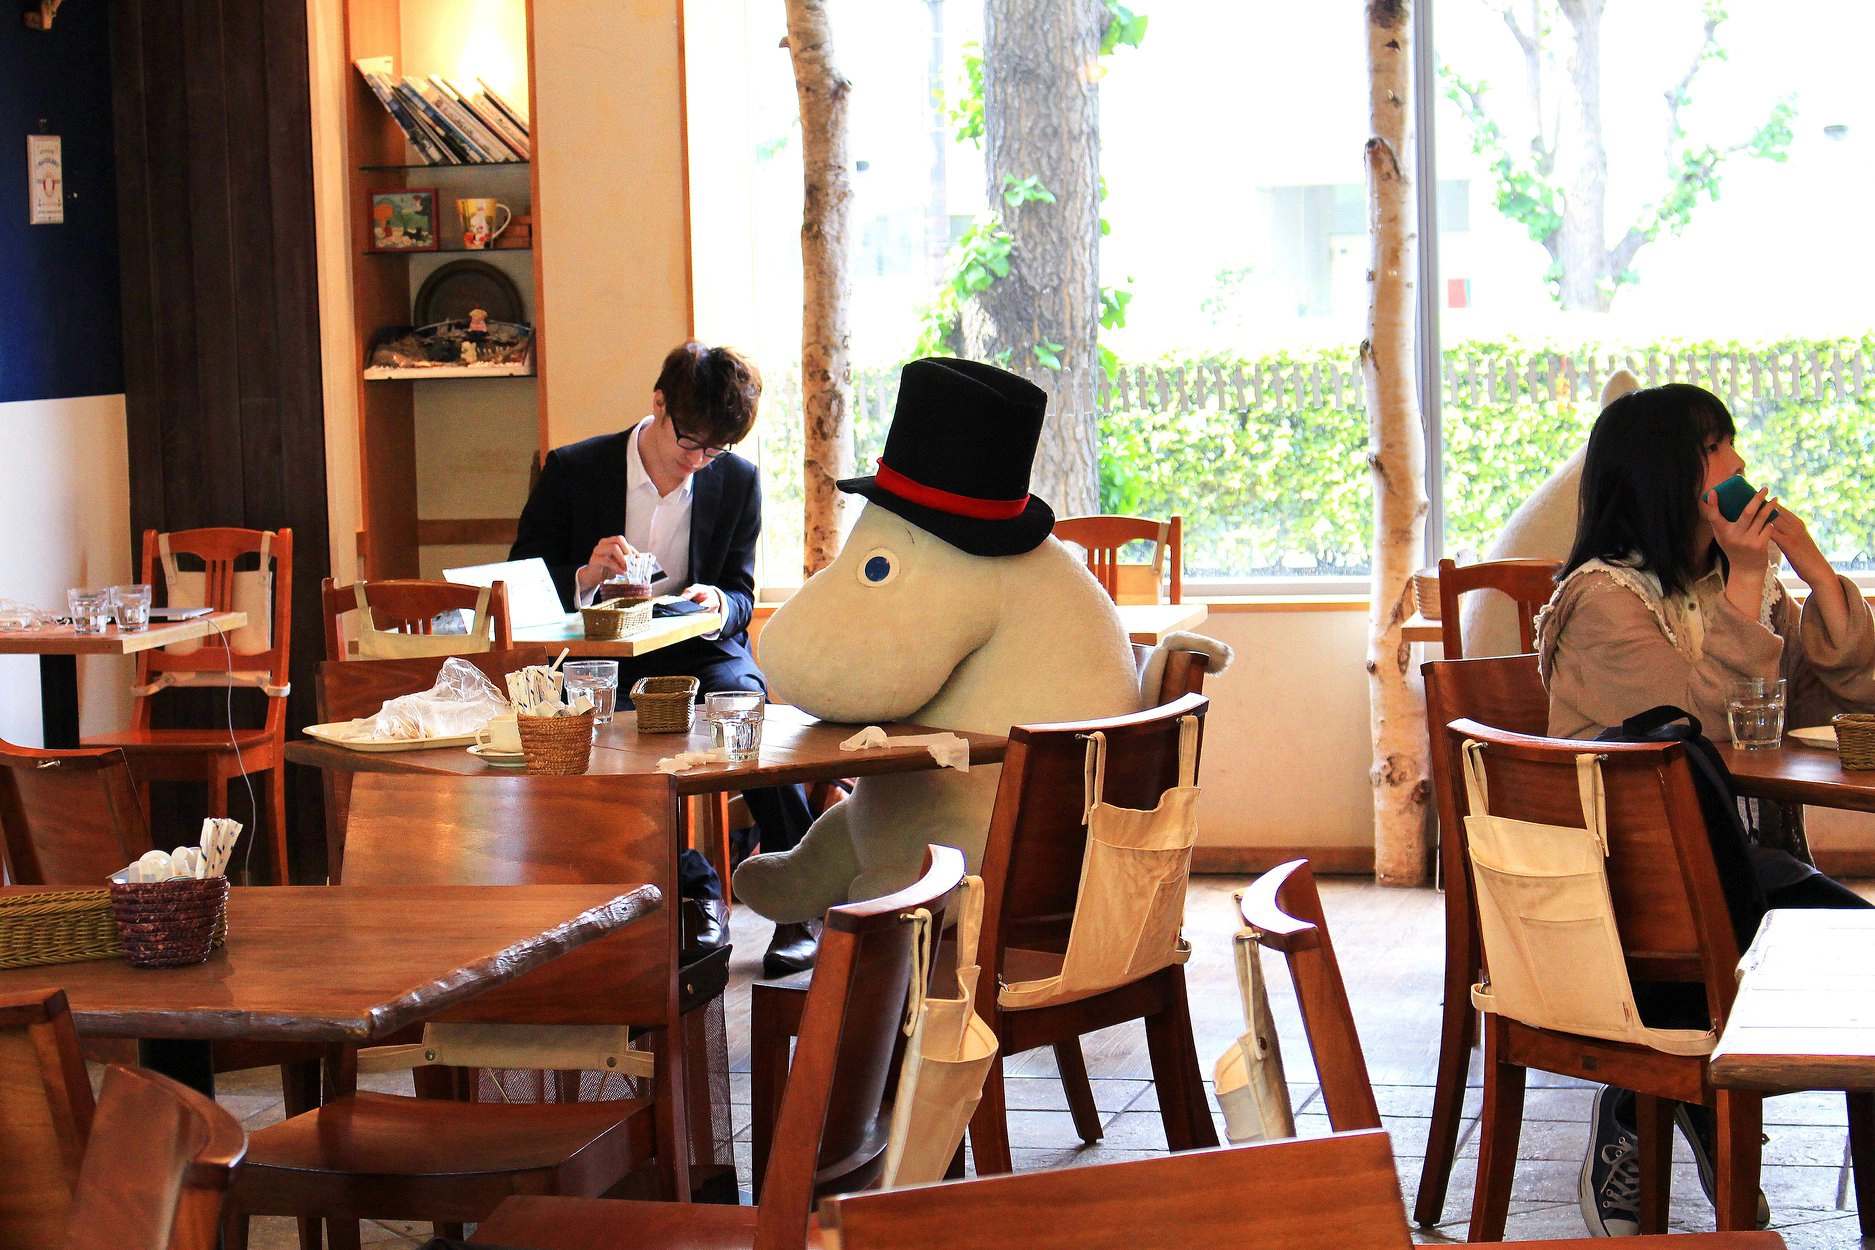 Moomin House, quán cà phê đặc biệt dành cho những người độc thân ở Nhật Bản